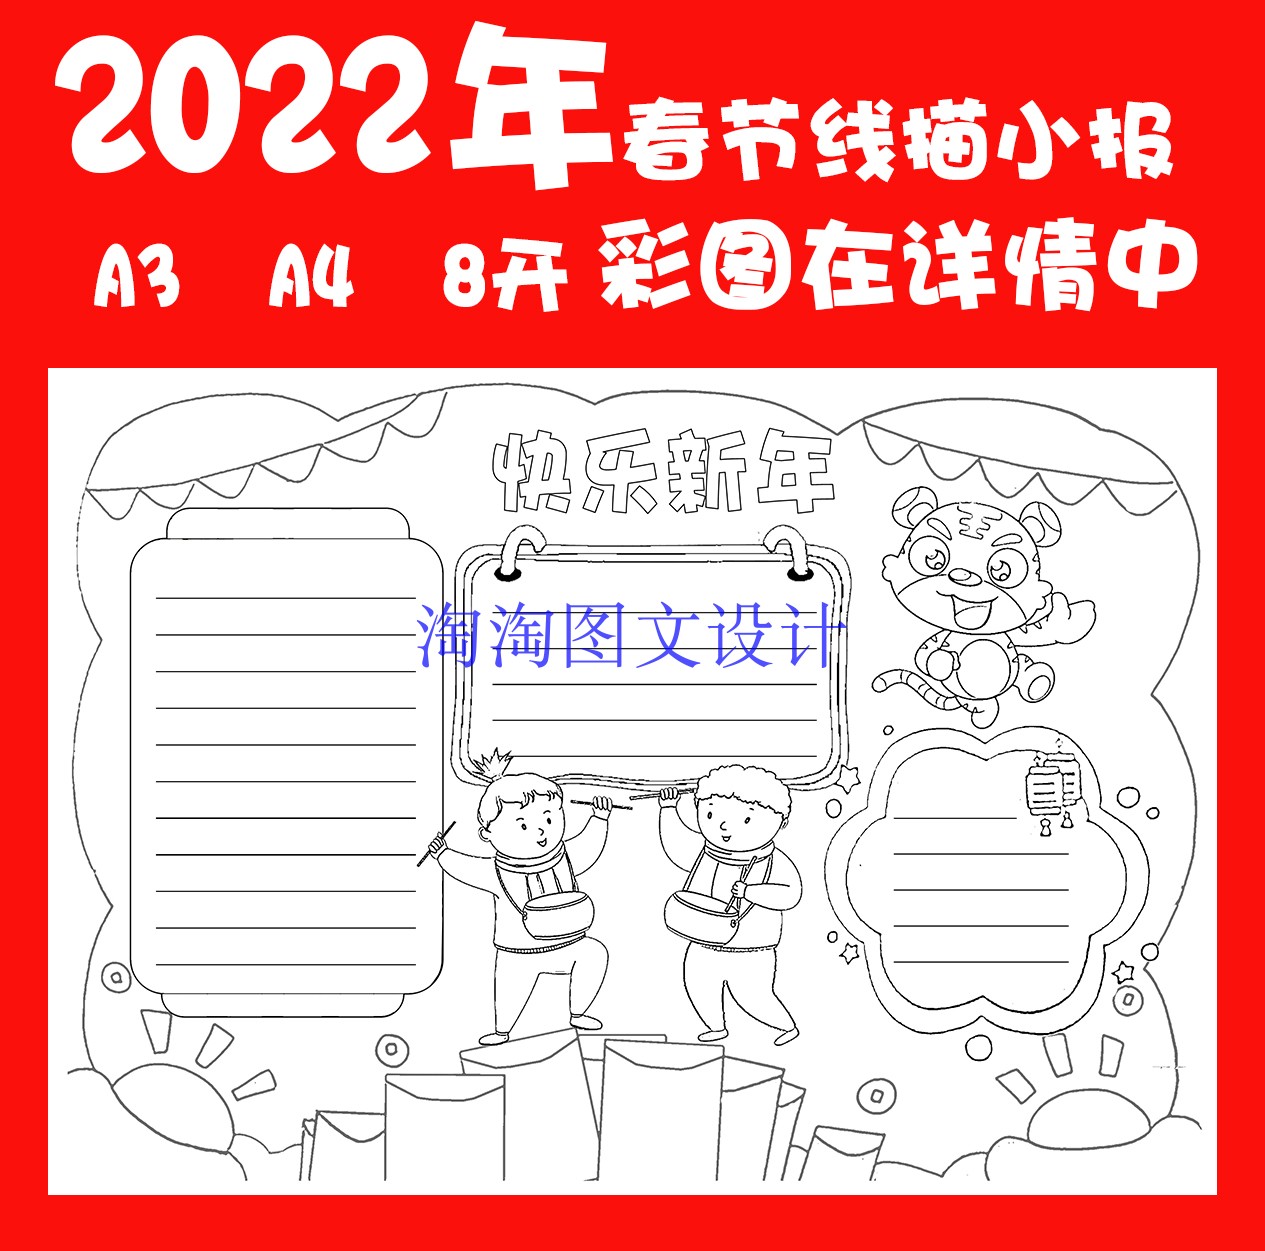 2022新年线描涂色小报手工绘制手抄报模板 虎年春节描边板报线稿